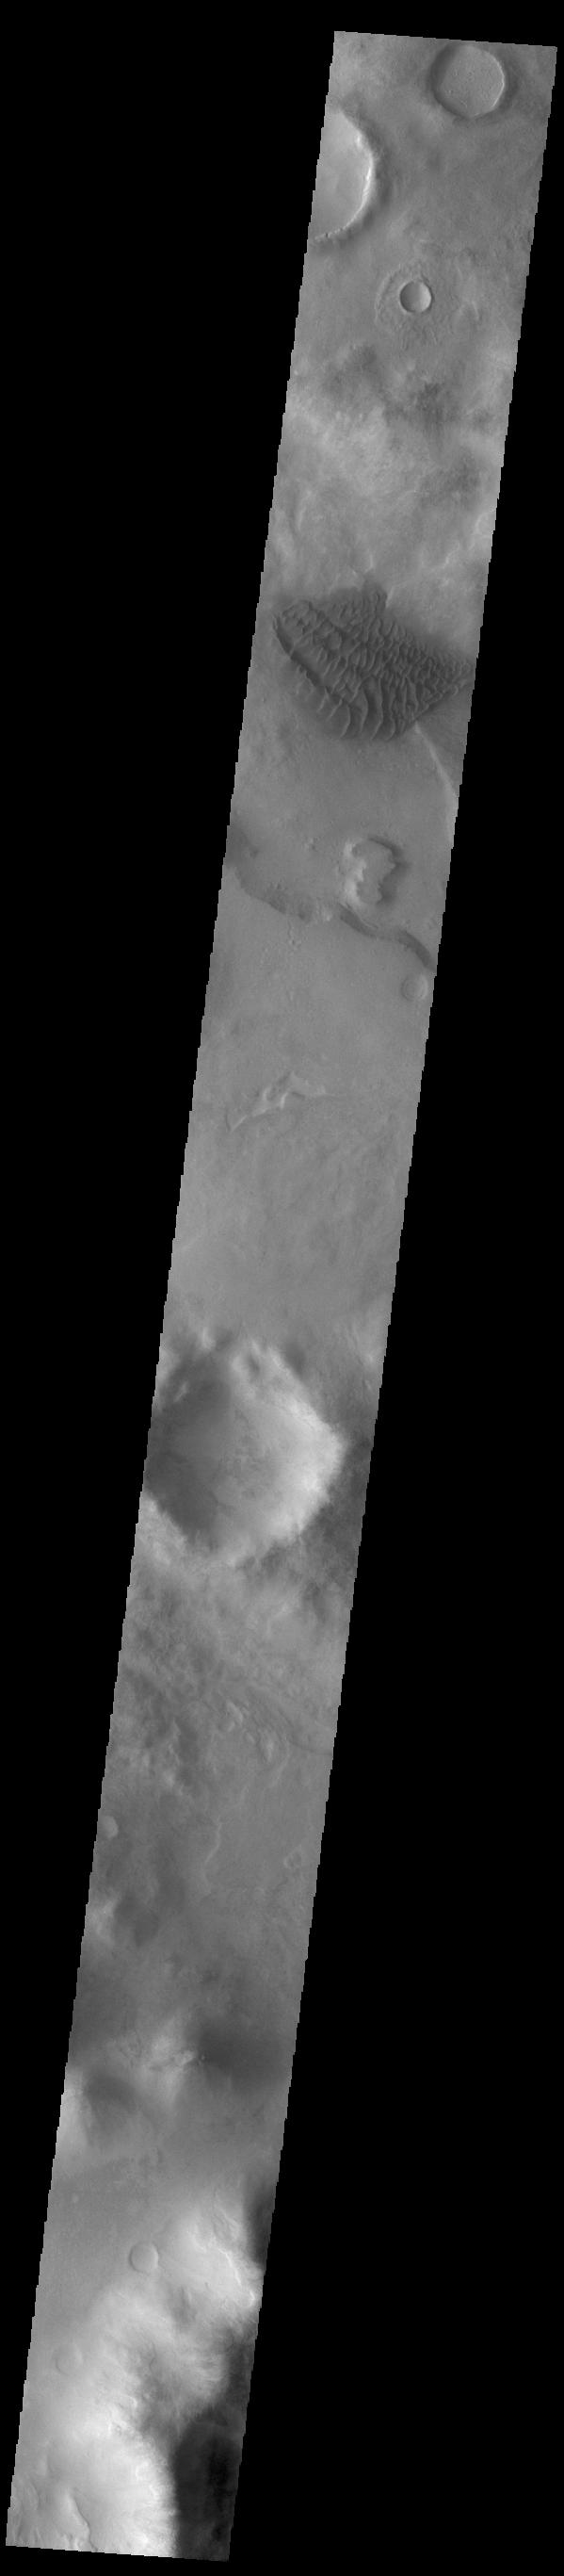 PIA24413: Halley Crater Dunes